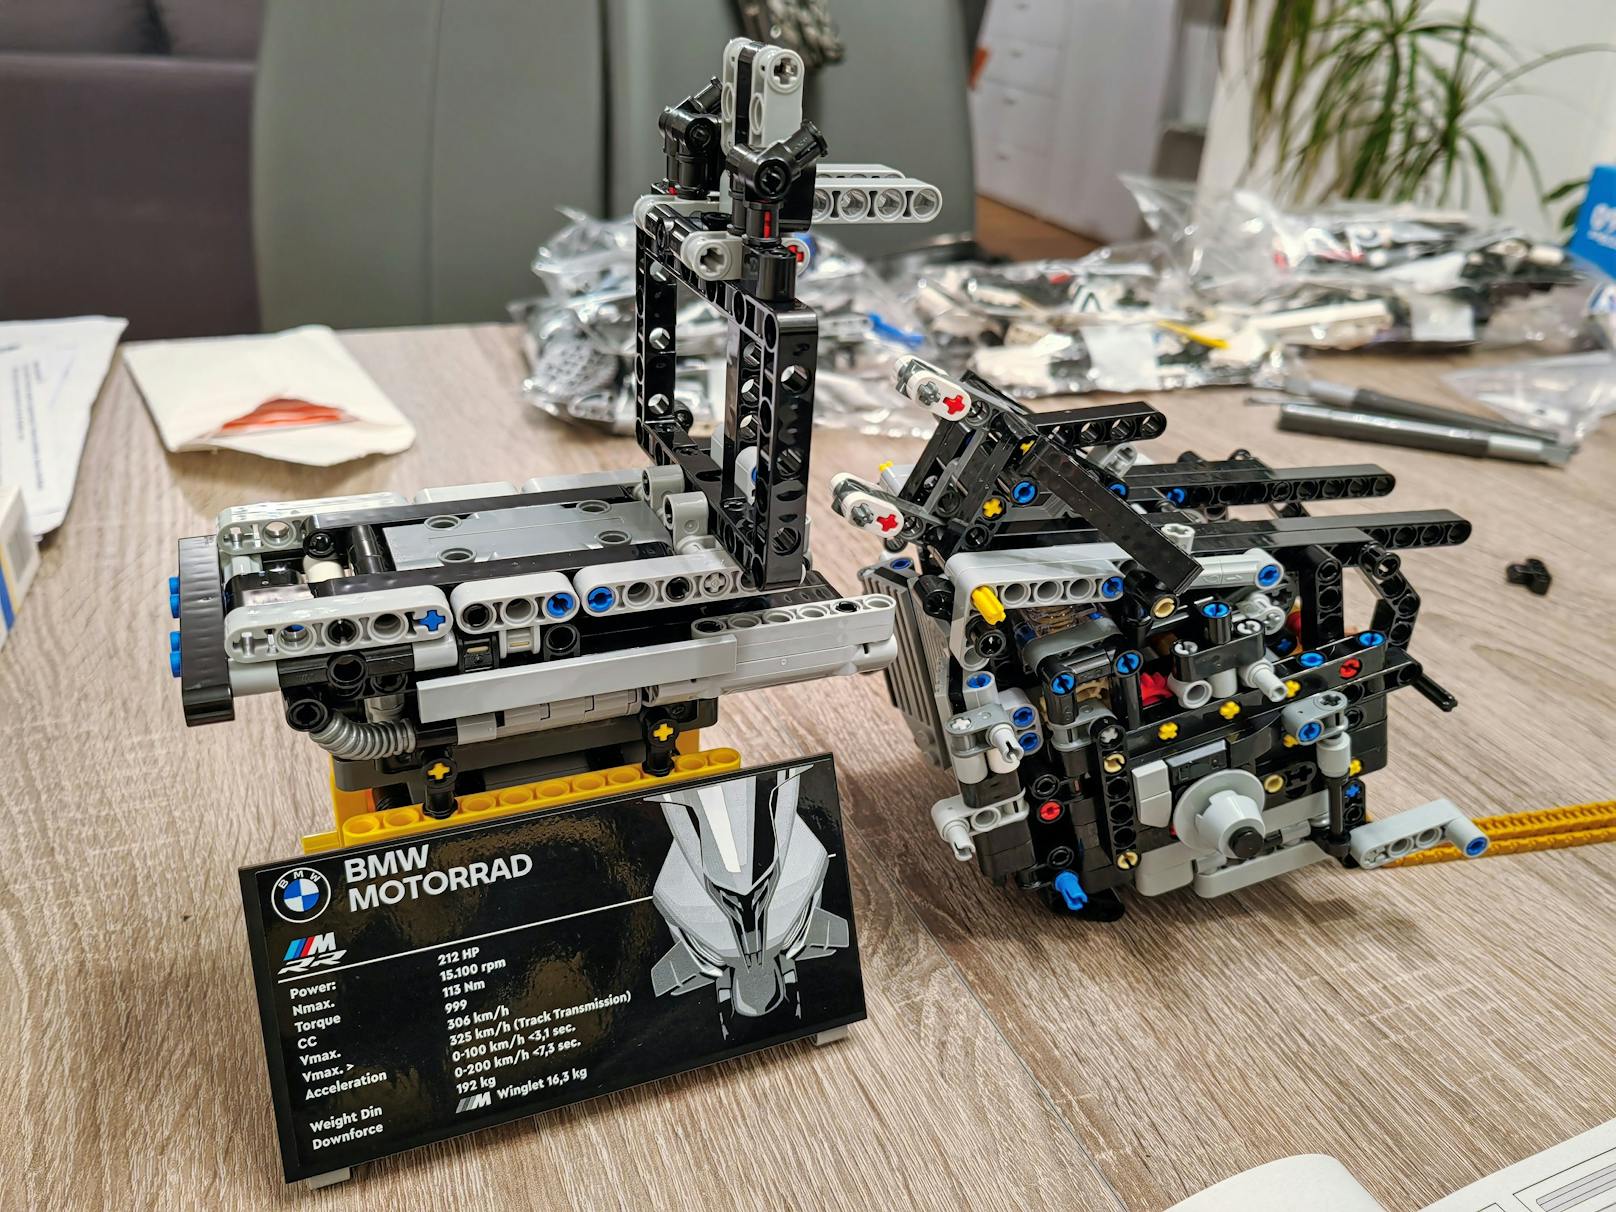 Obwohl weder die Zahl der LEGO-Elemente überragend ist, noch die Anleitung schwierig aussieht, muss man bis zu 20 Stunden Bauzeit für das Modell einberechnen.